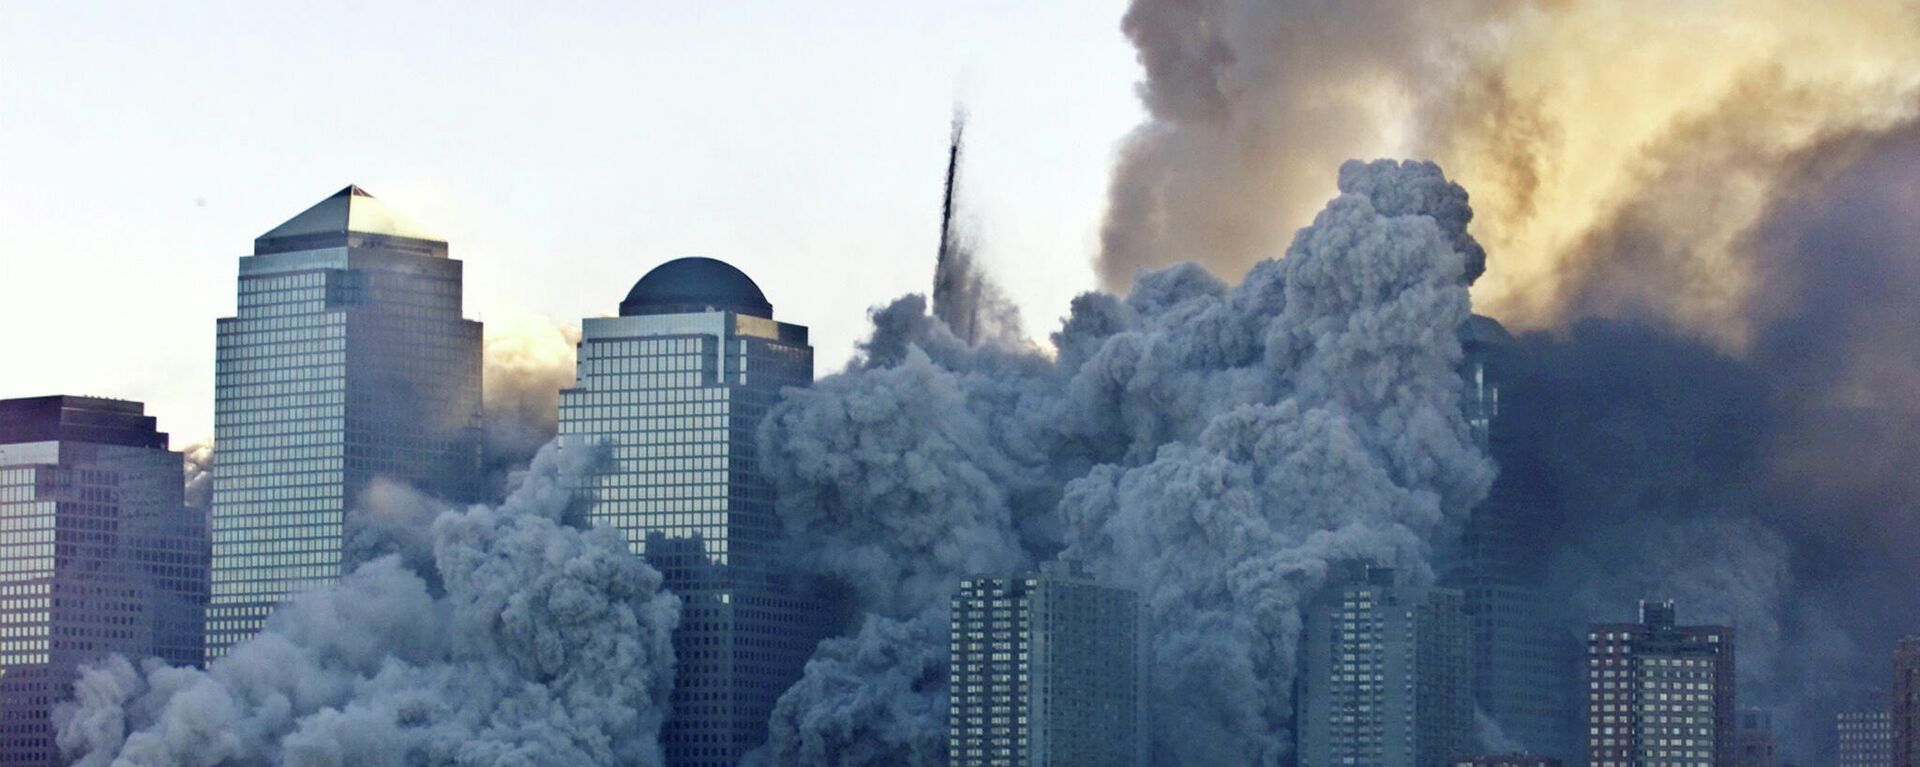 Los ataques terroristas del 11 de septiembre de 2001 en EEUU - Sputnik Mundo, 1920, 11.09.2021